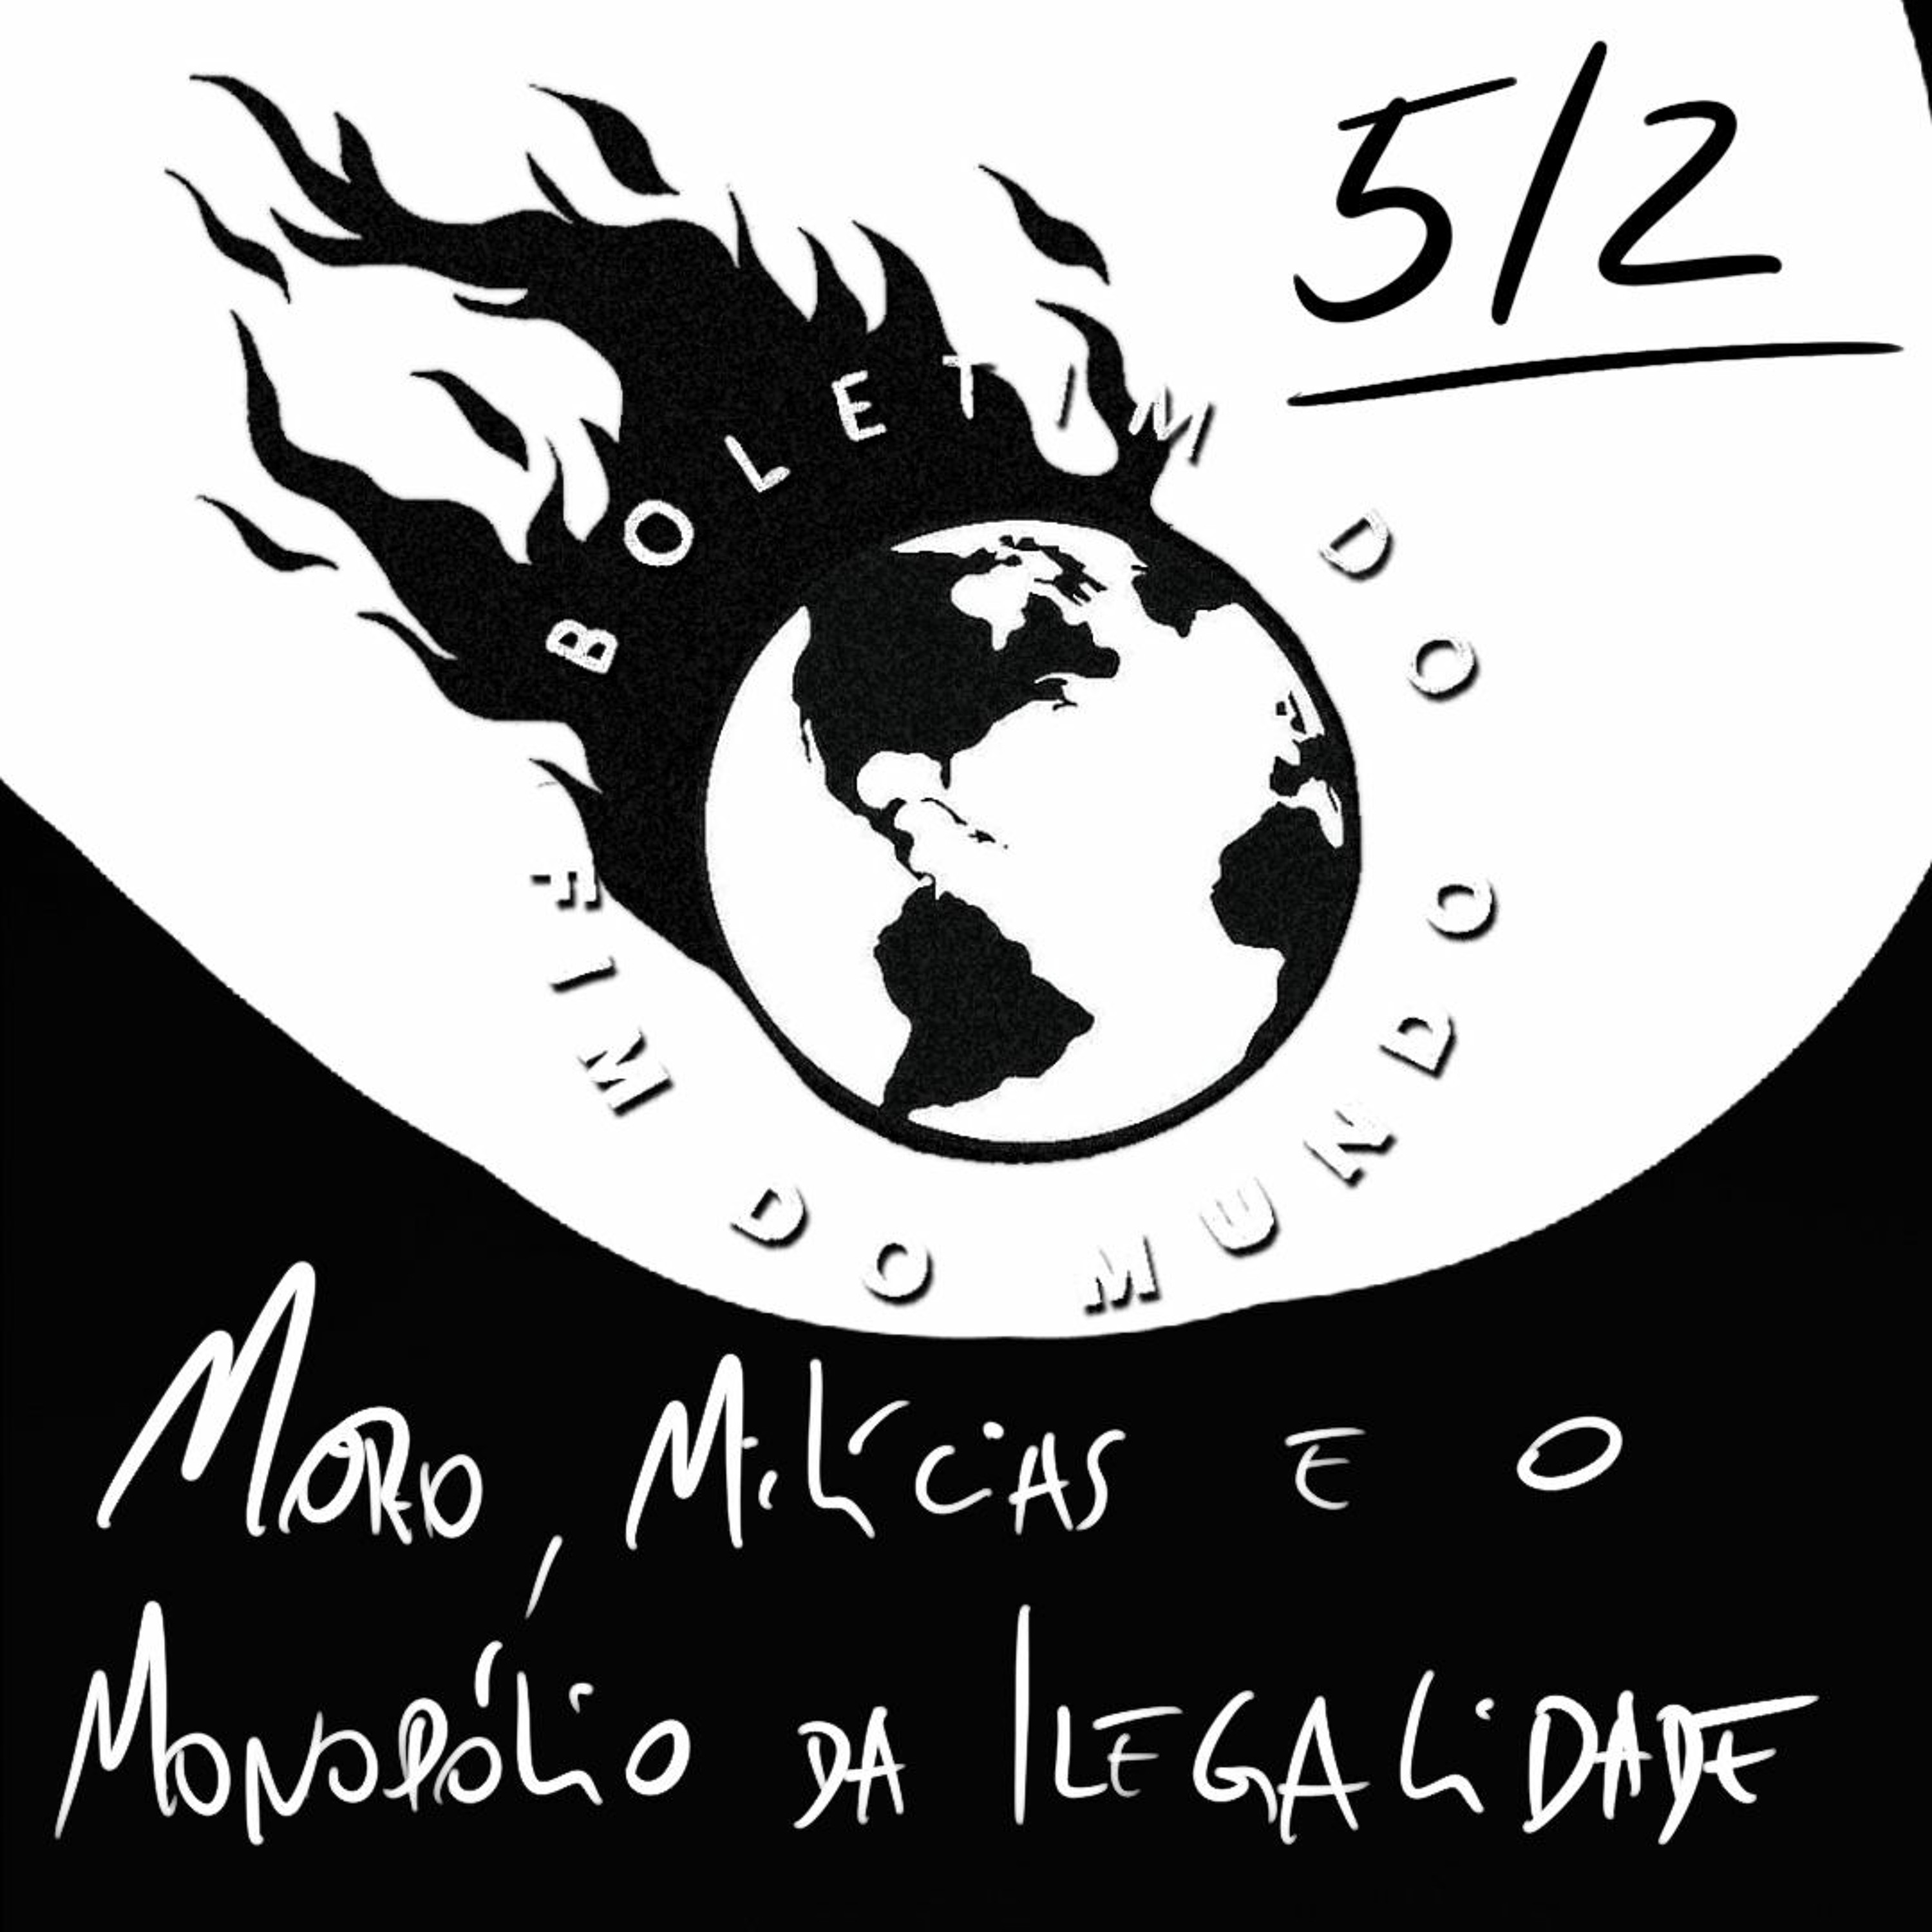 BFM - 05/02 - Moro, Milícias e o Monopólio da Ilegalidade